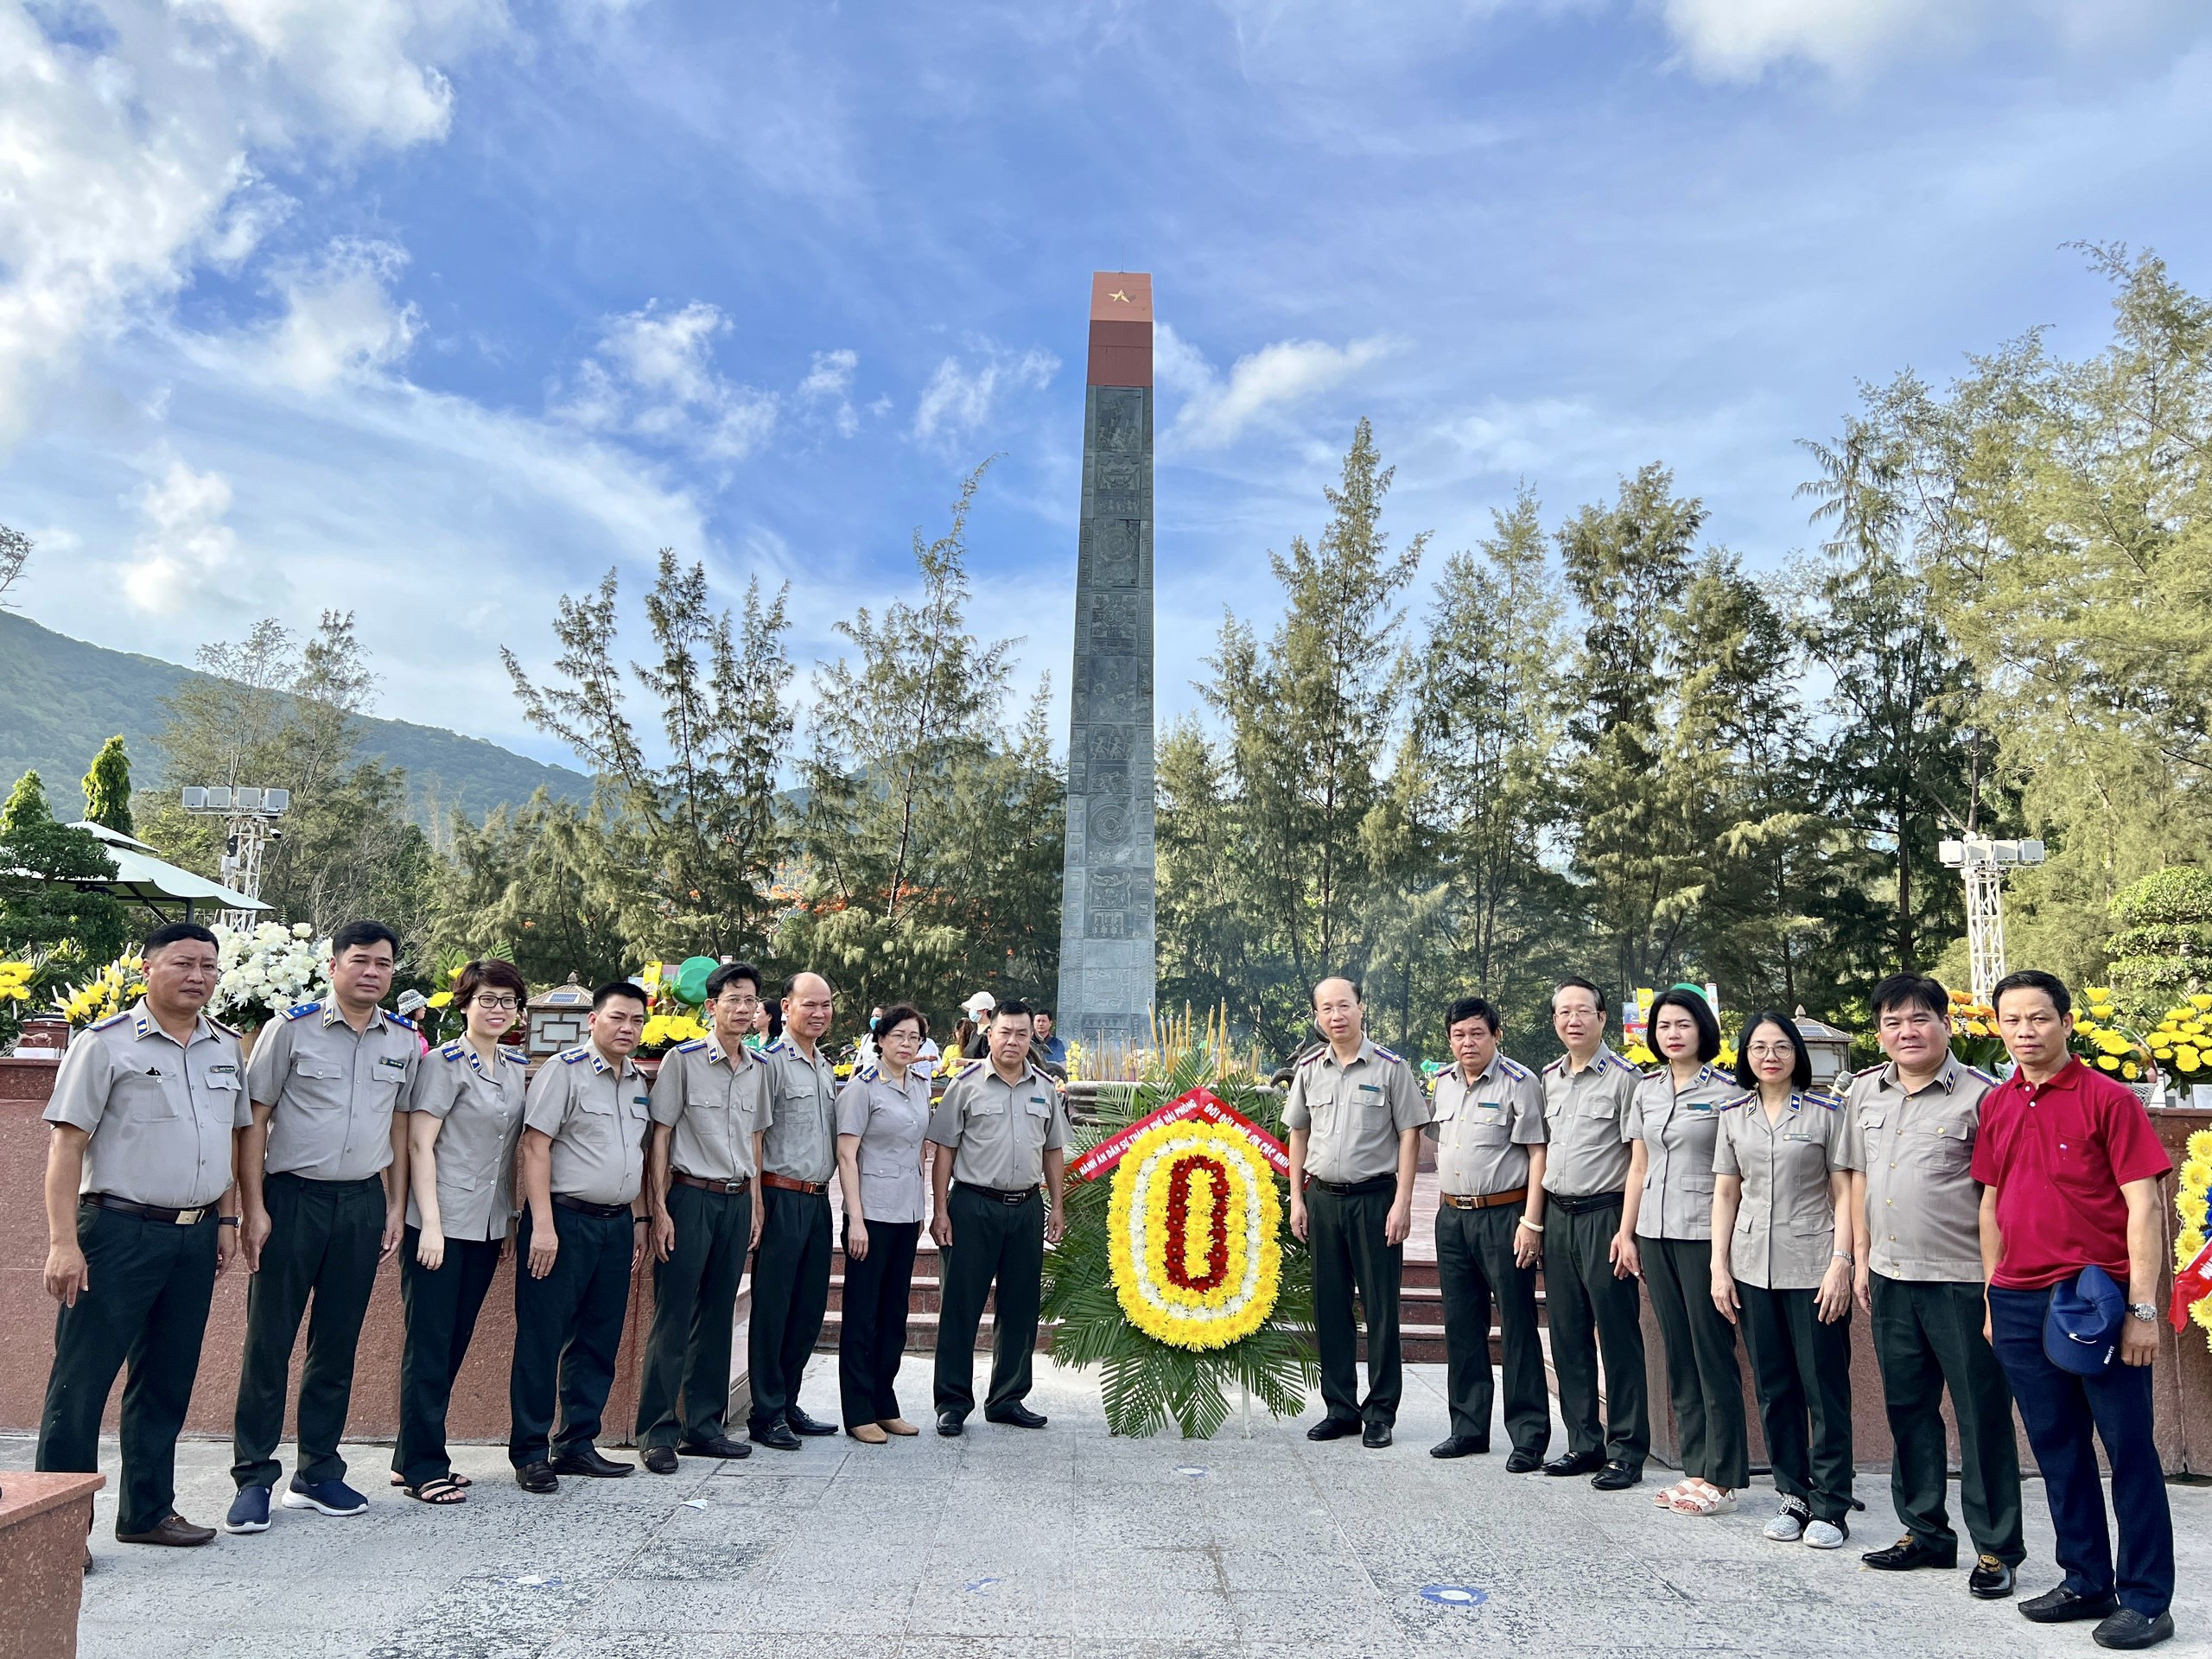 Cục Thi hành án dân sự thành phố đã tổ chức chương trình về nguồn tri ân các anh hùng liệt sỹ tại huyện Côn Đảo, tỉnh Bà Rịa- Vũng Tàu